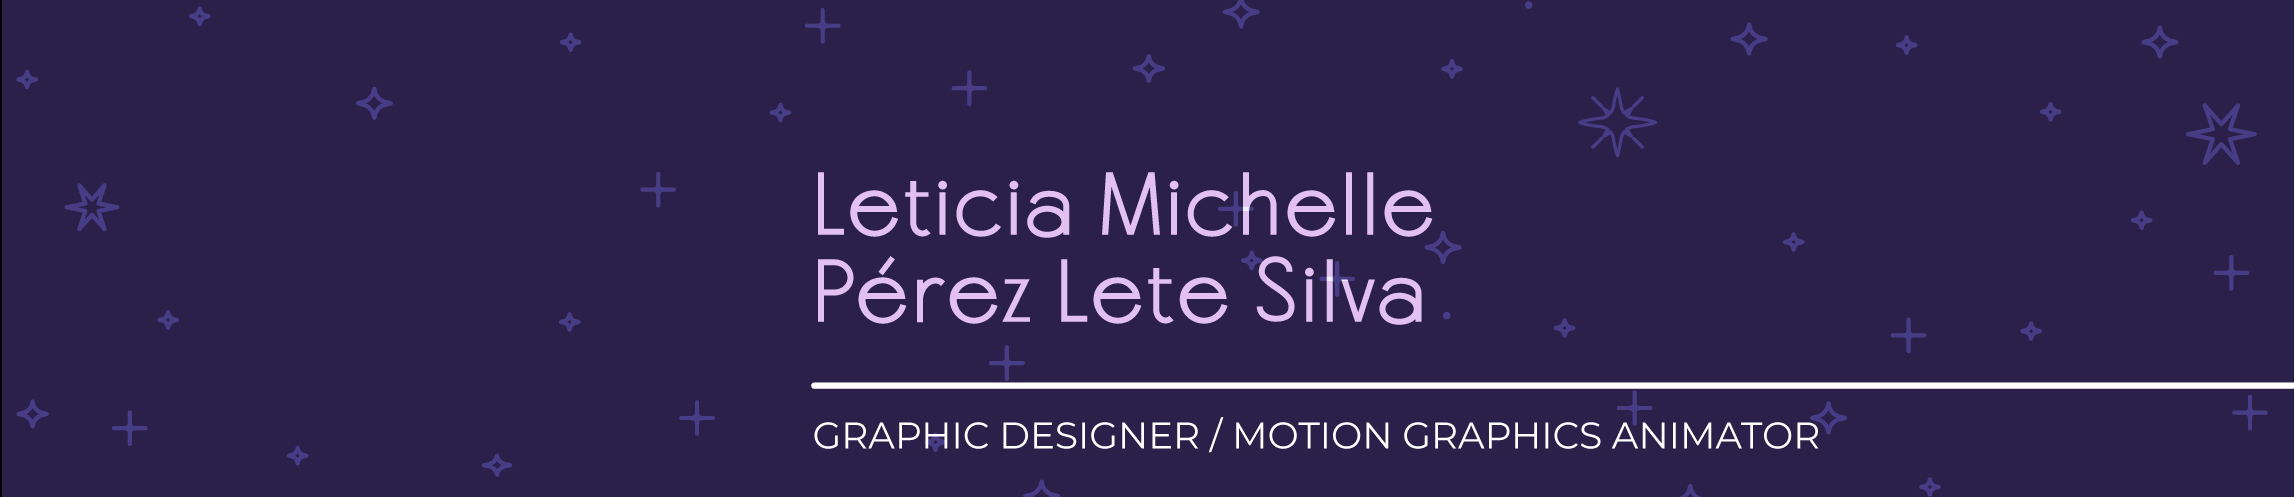 Leticia Michelle Pérez Lete Silva's profile banner